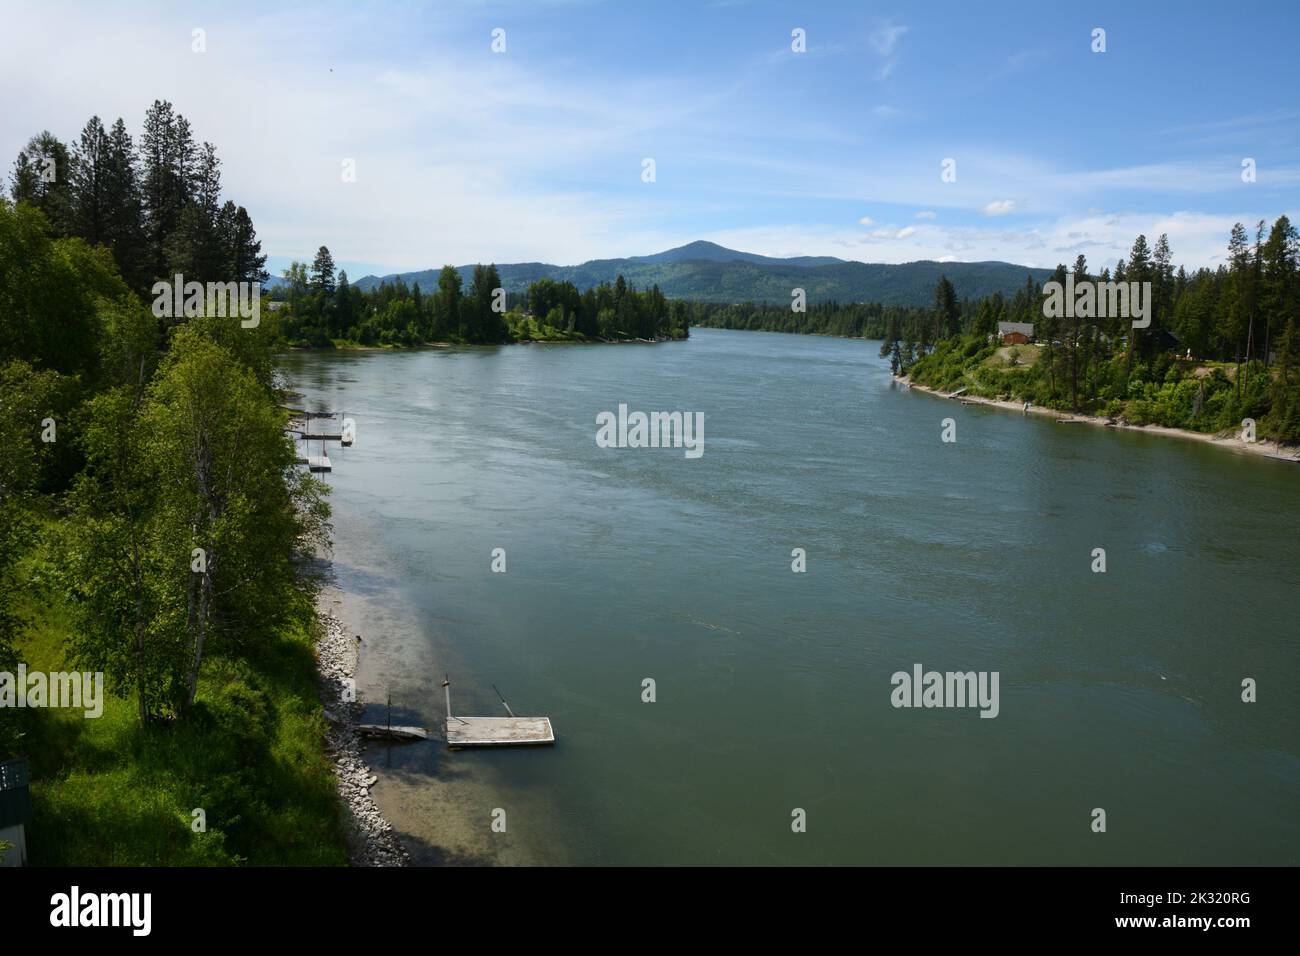 Il fiume Pend-Oreille, un affluente della Columbia, che attraversa la Colville National Forest vicino a Ione, nel nord-est dello stato di Washington, USA. Foto Stock